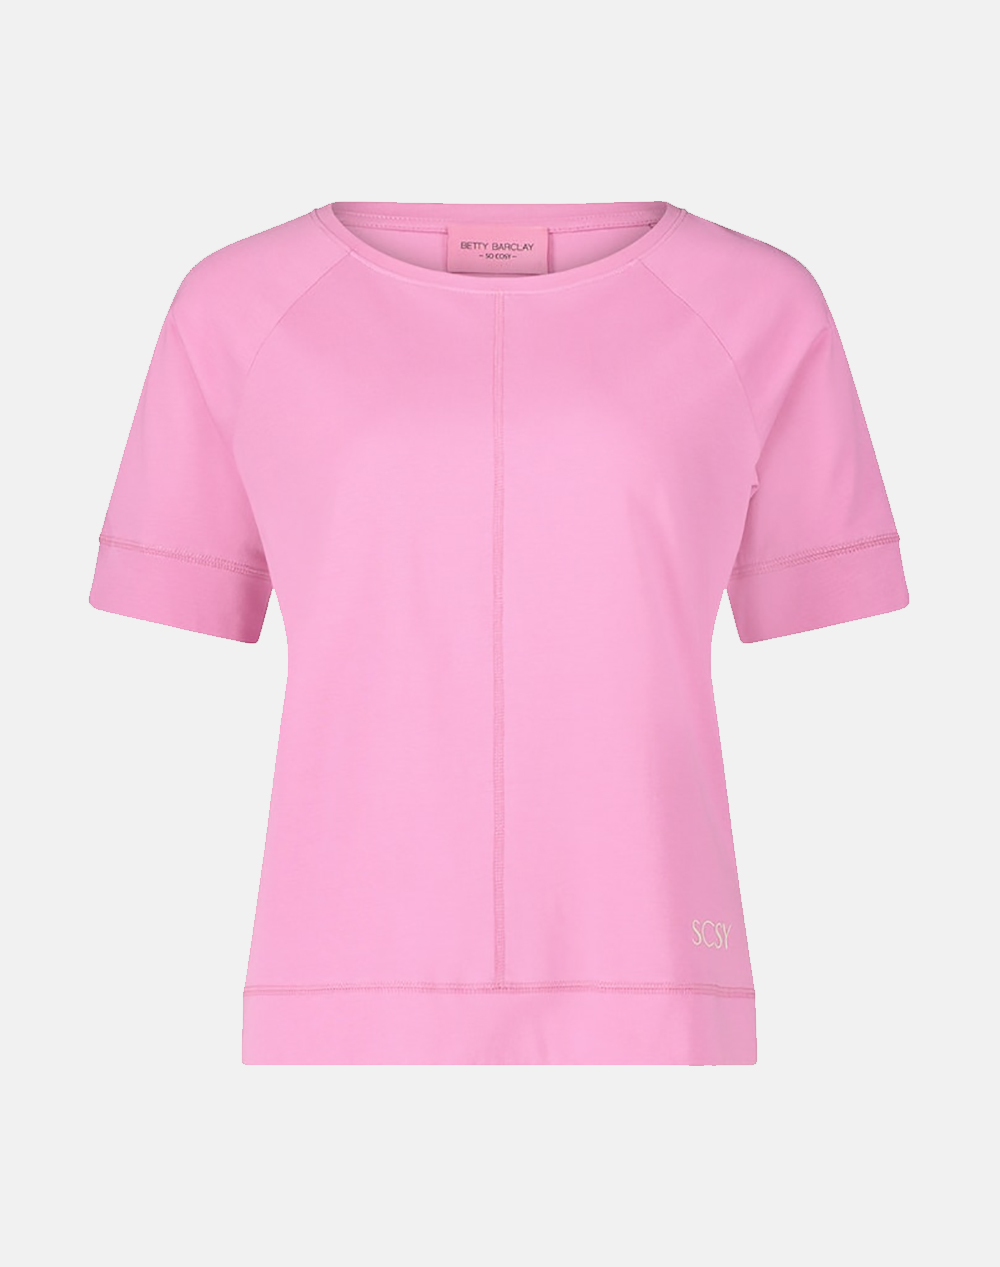 BETTY BARCLAY Shirt Maßtab 2146/8157-4262 Pink